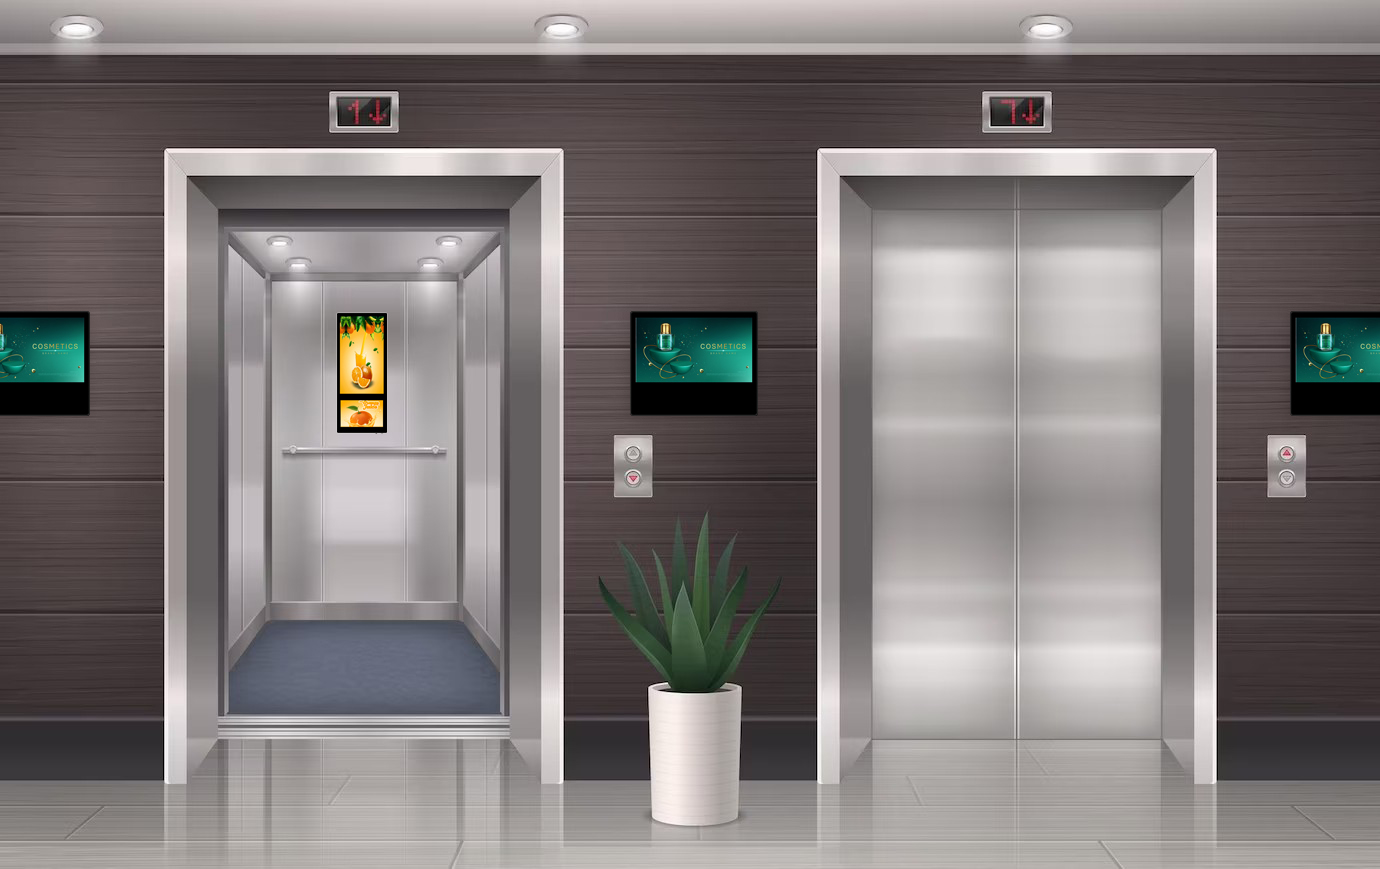 Tela de publicidade digital de elevador